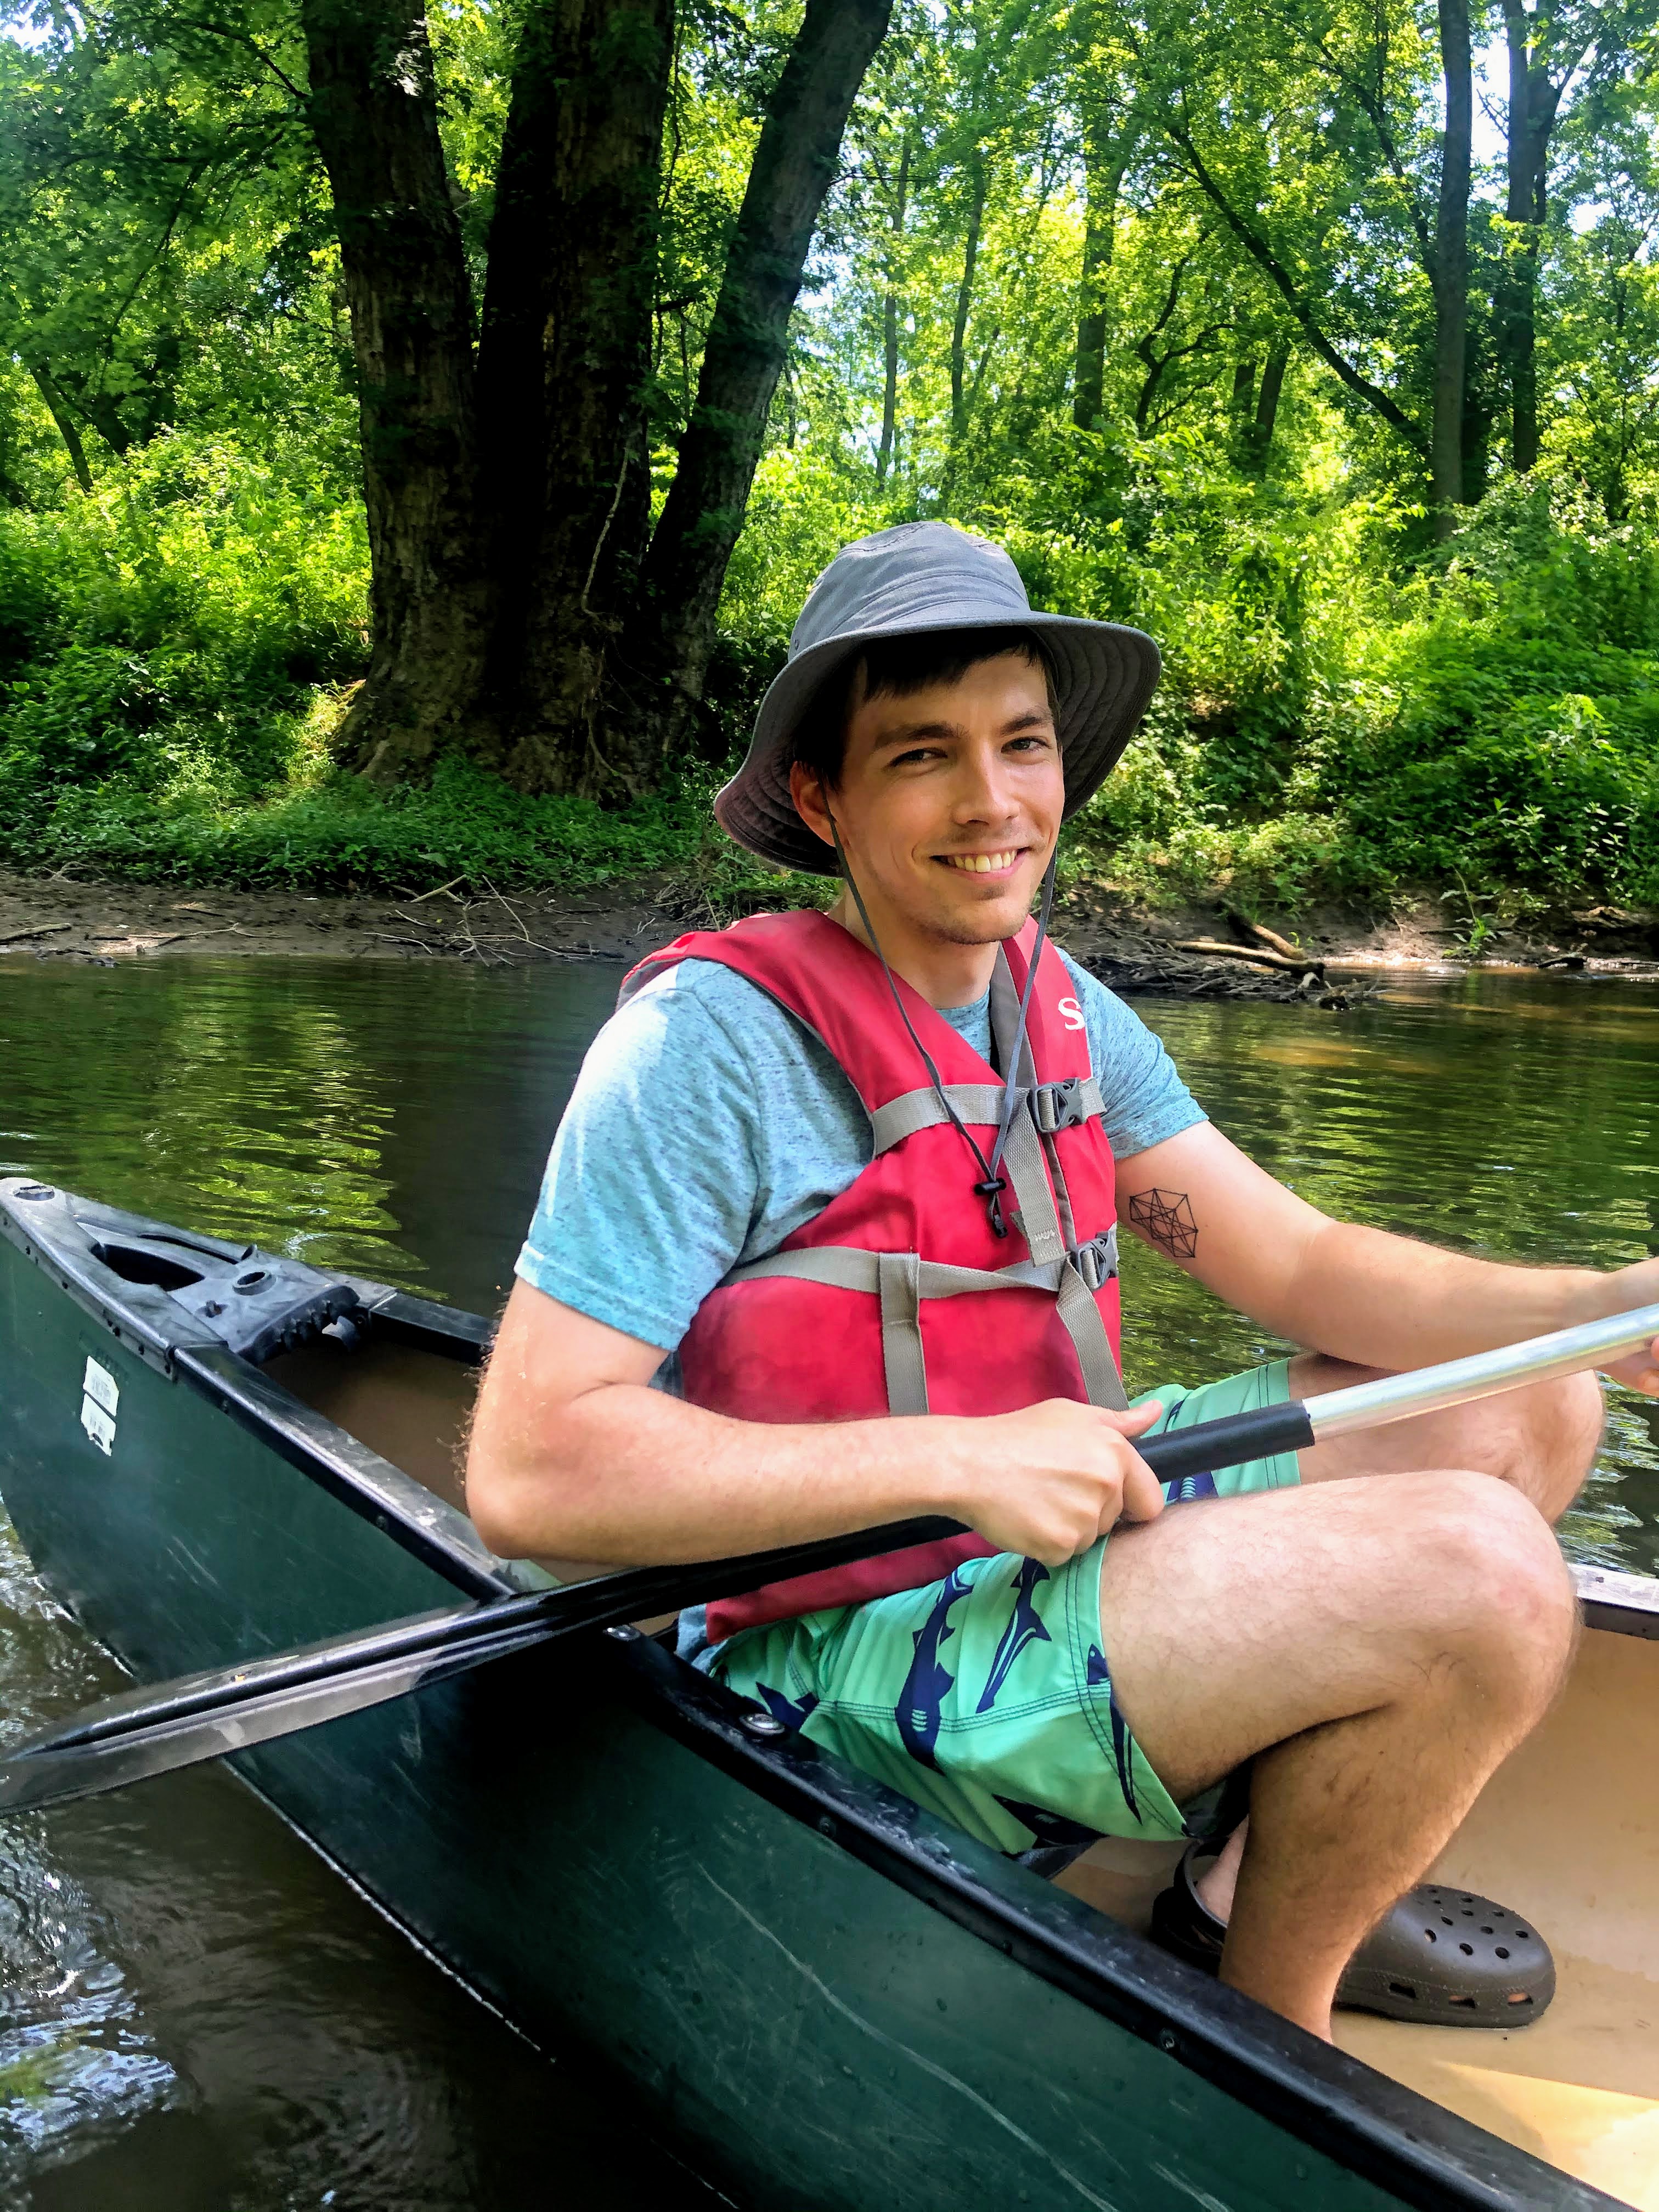 Me in a canoe